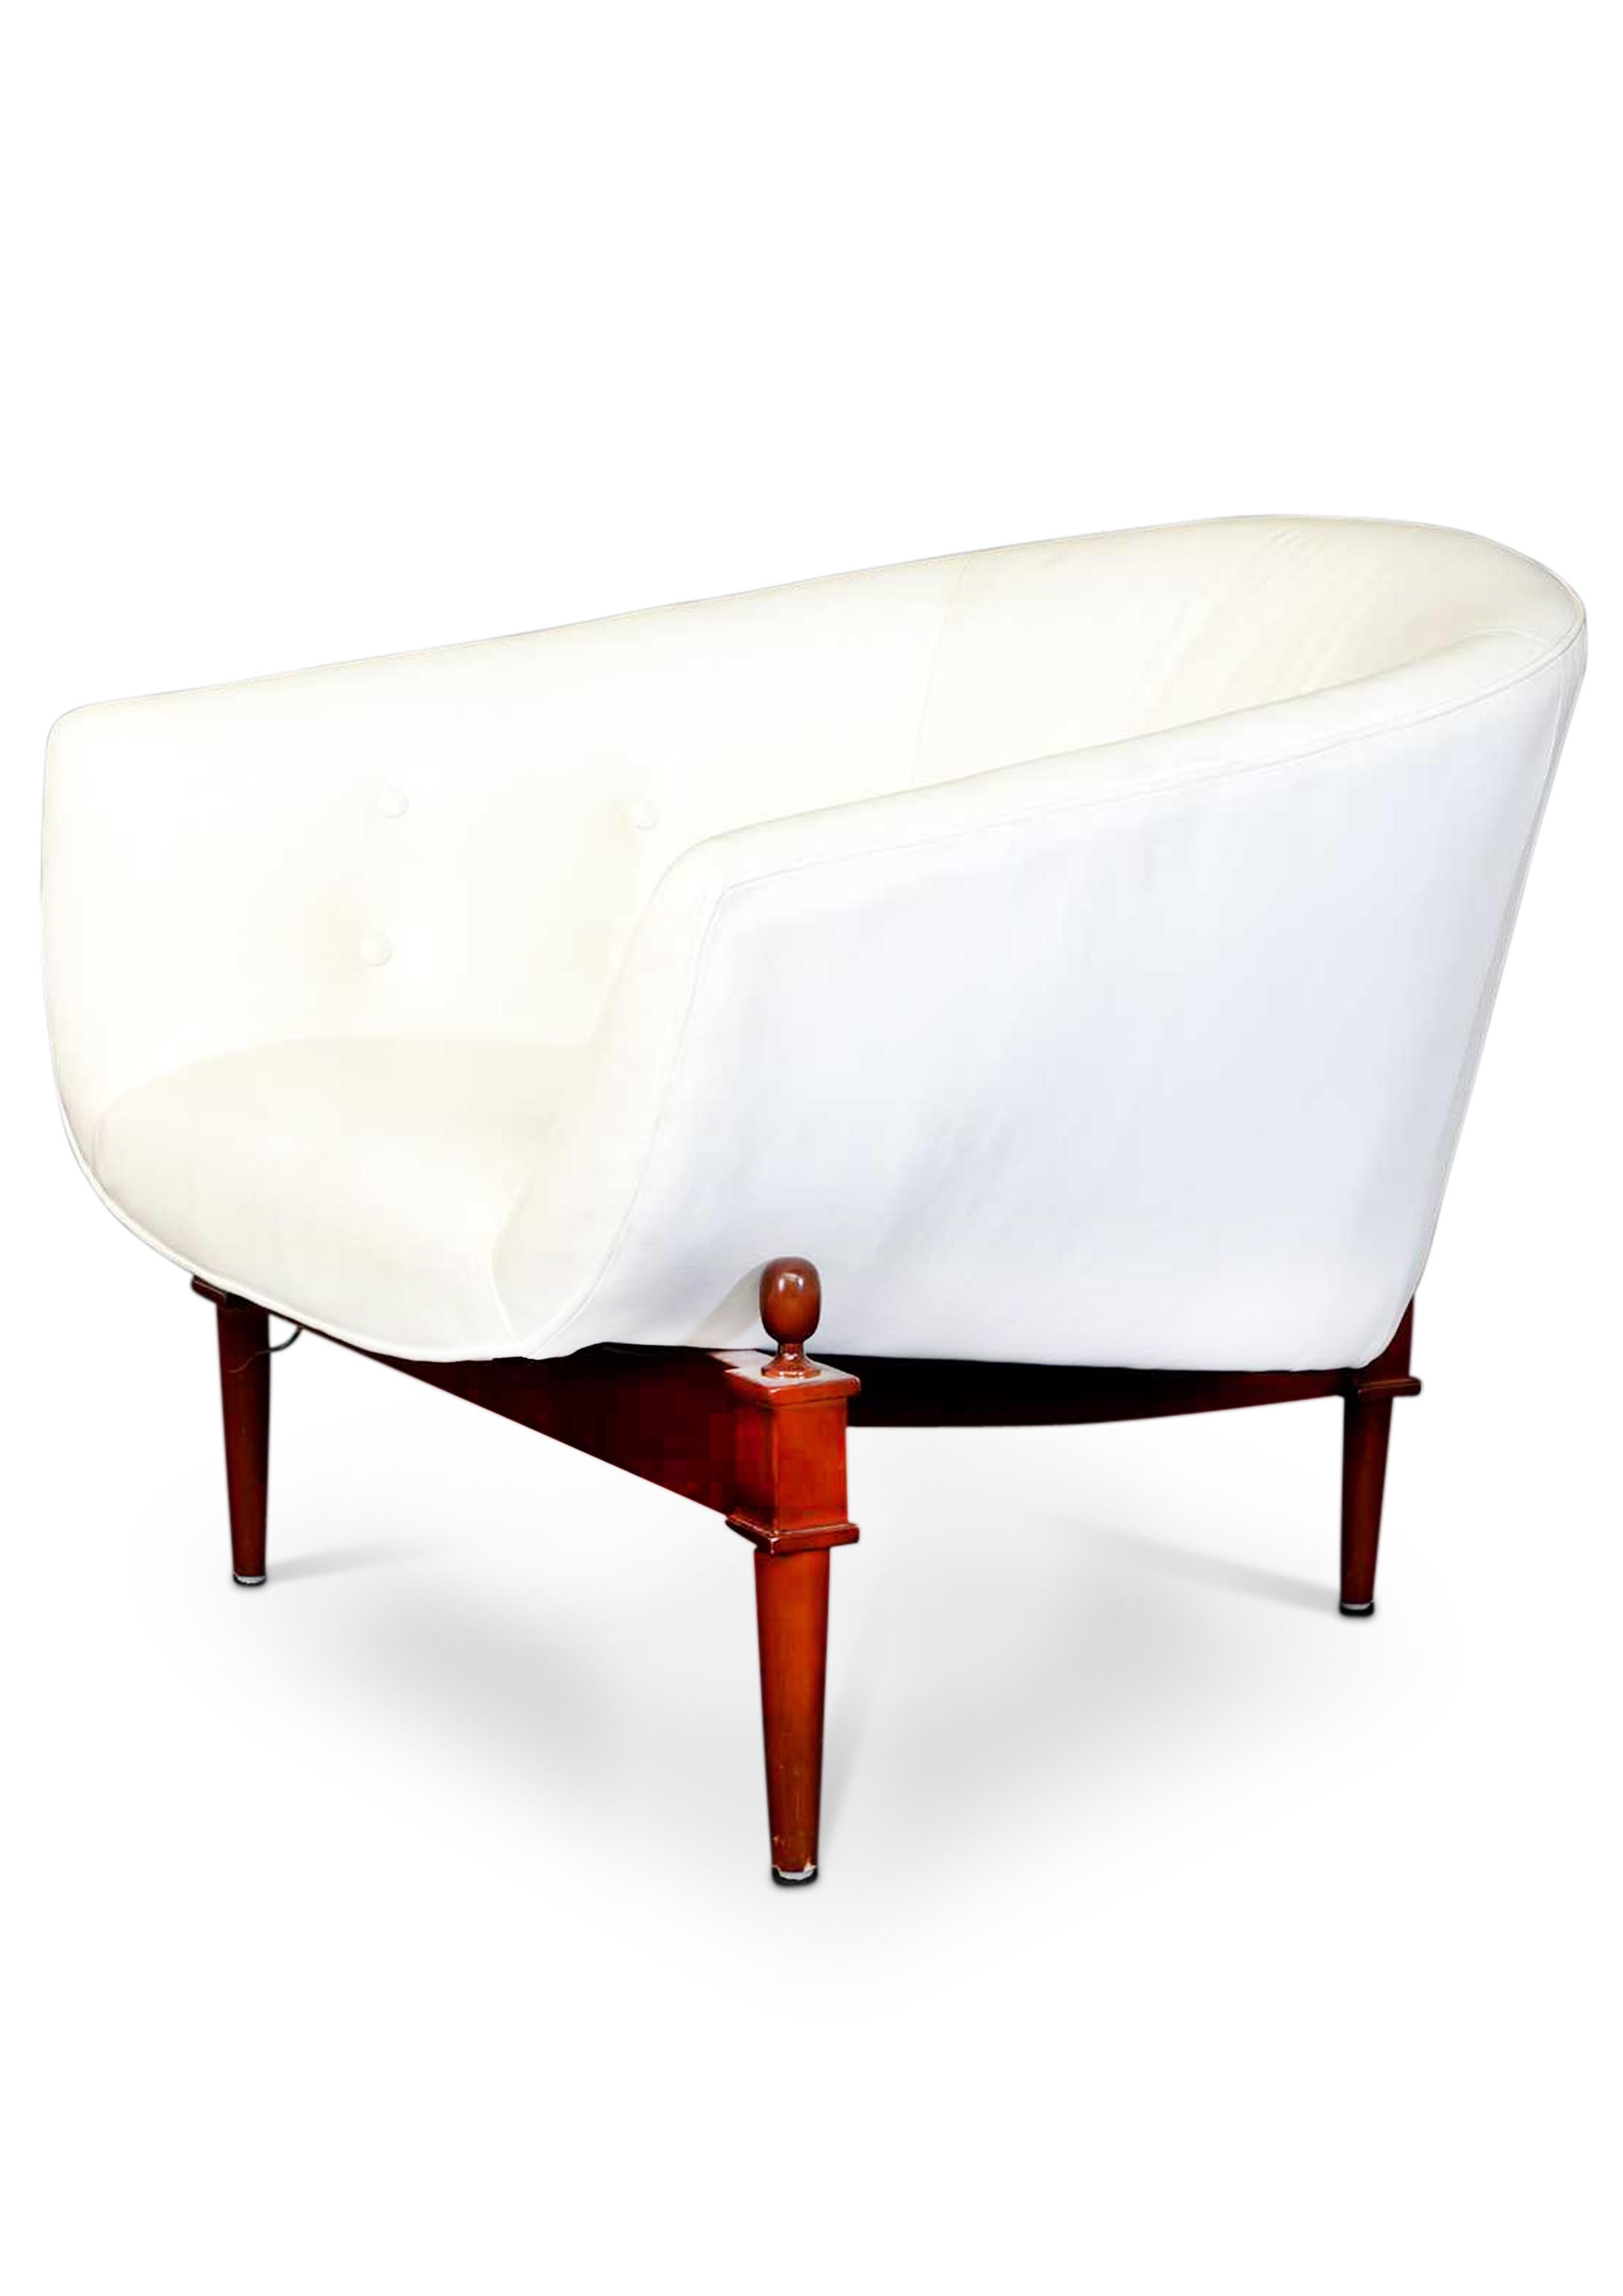 Walnuss gebeizt Eiche & weiß geknöpften Leder Mimi Sessel Modell 2637 von Global Views 

Ein hufeisenförmiger Sitz, gepolstert mit weißem, geknöpftem Leder, auf einem nussbaumfarbenen Dreibeinfuß

Der an die glamourösen 1960er Jahre erinnernde